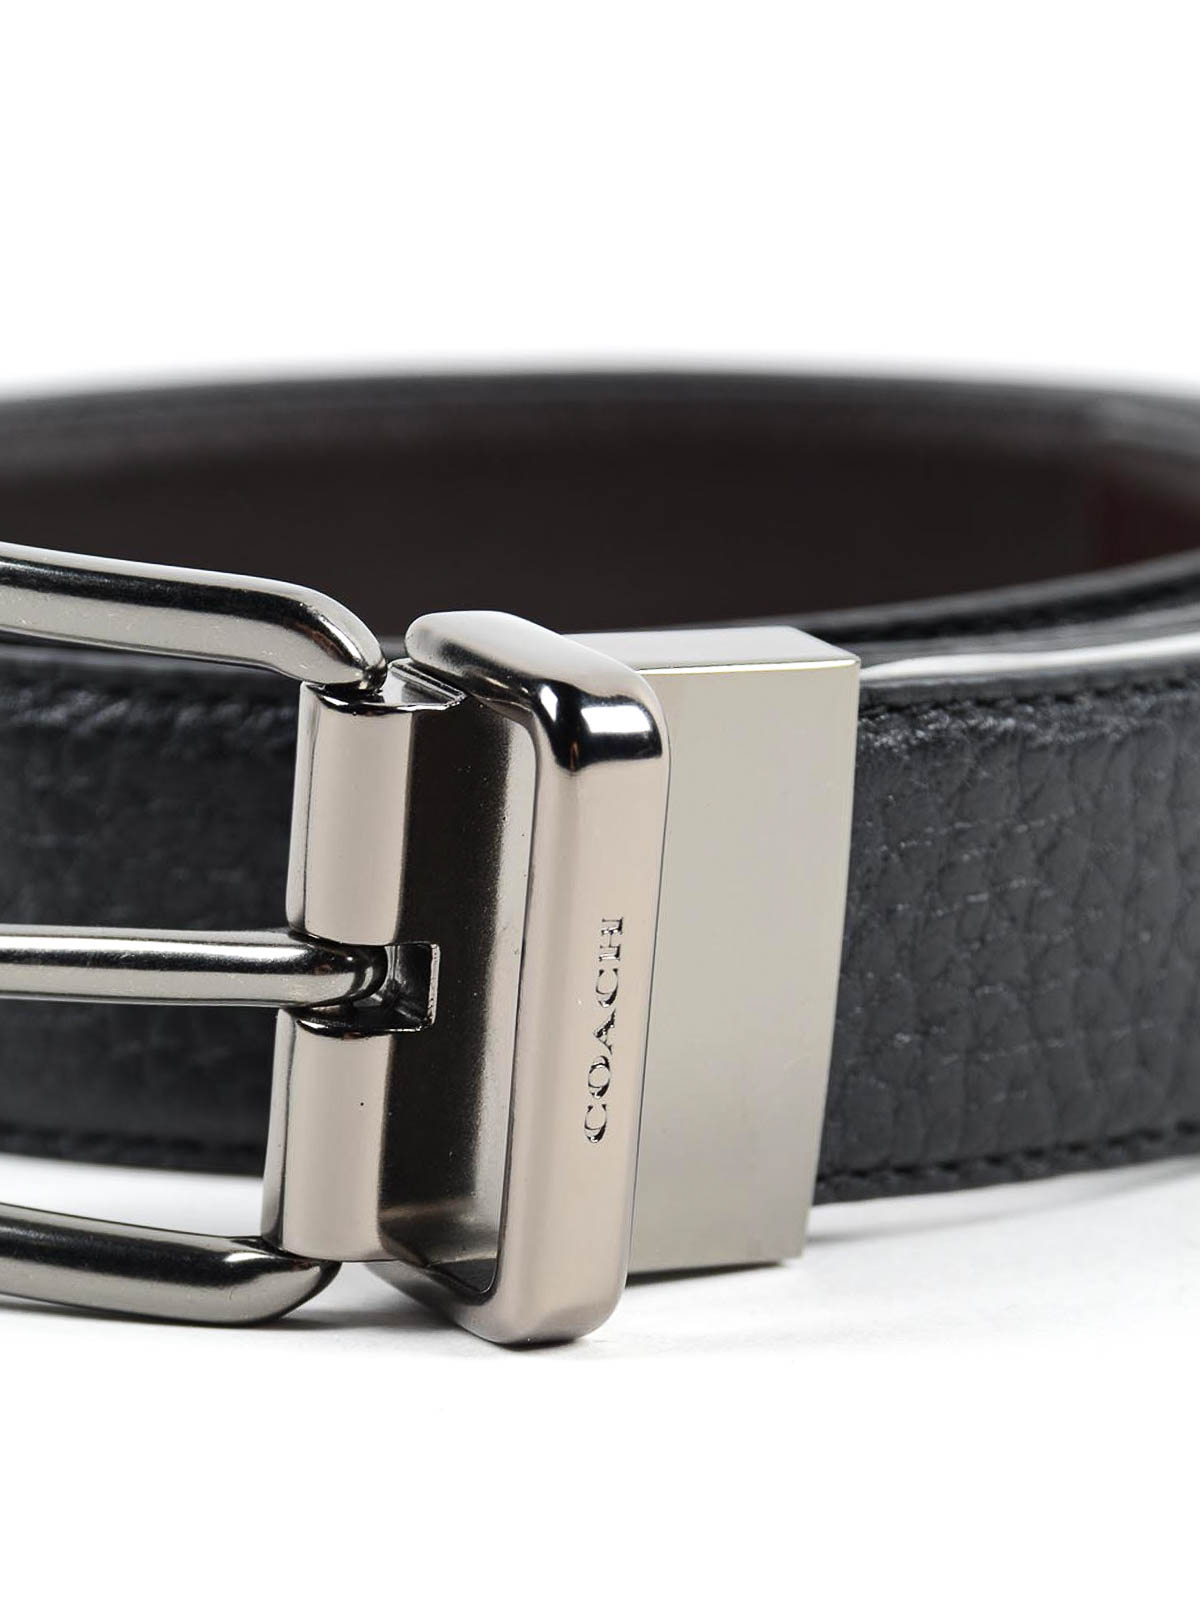 Descuidado Roux mercado Cinturones Coach - Cinturón Negro Para Hombre - 64079BLACKMAHOGANY